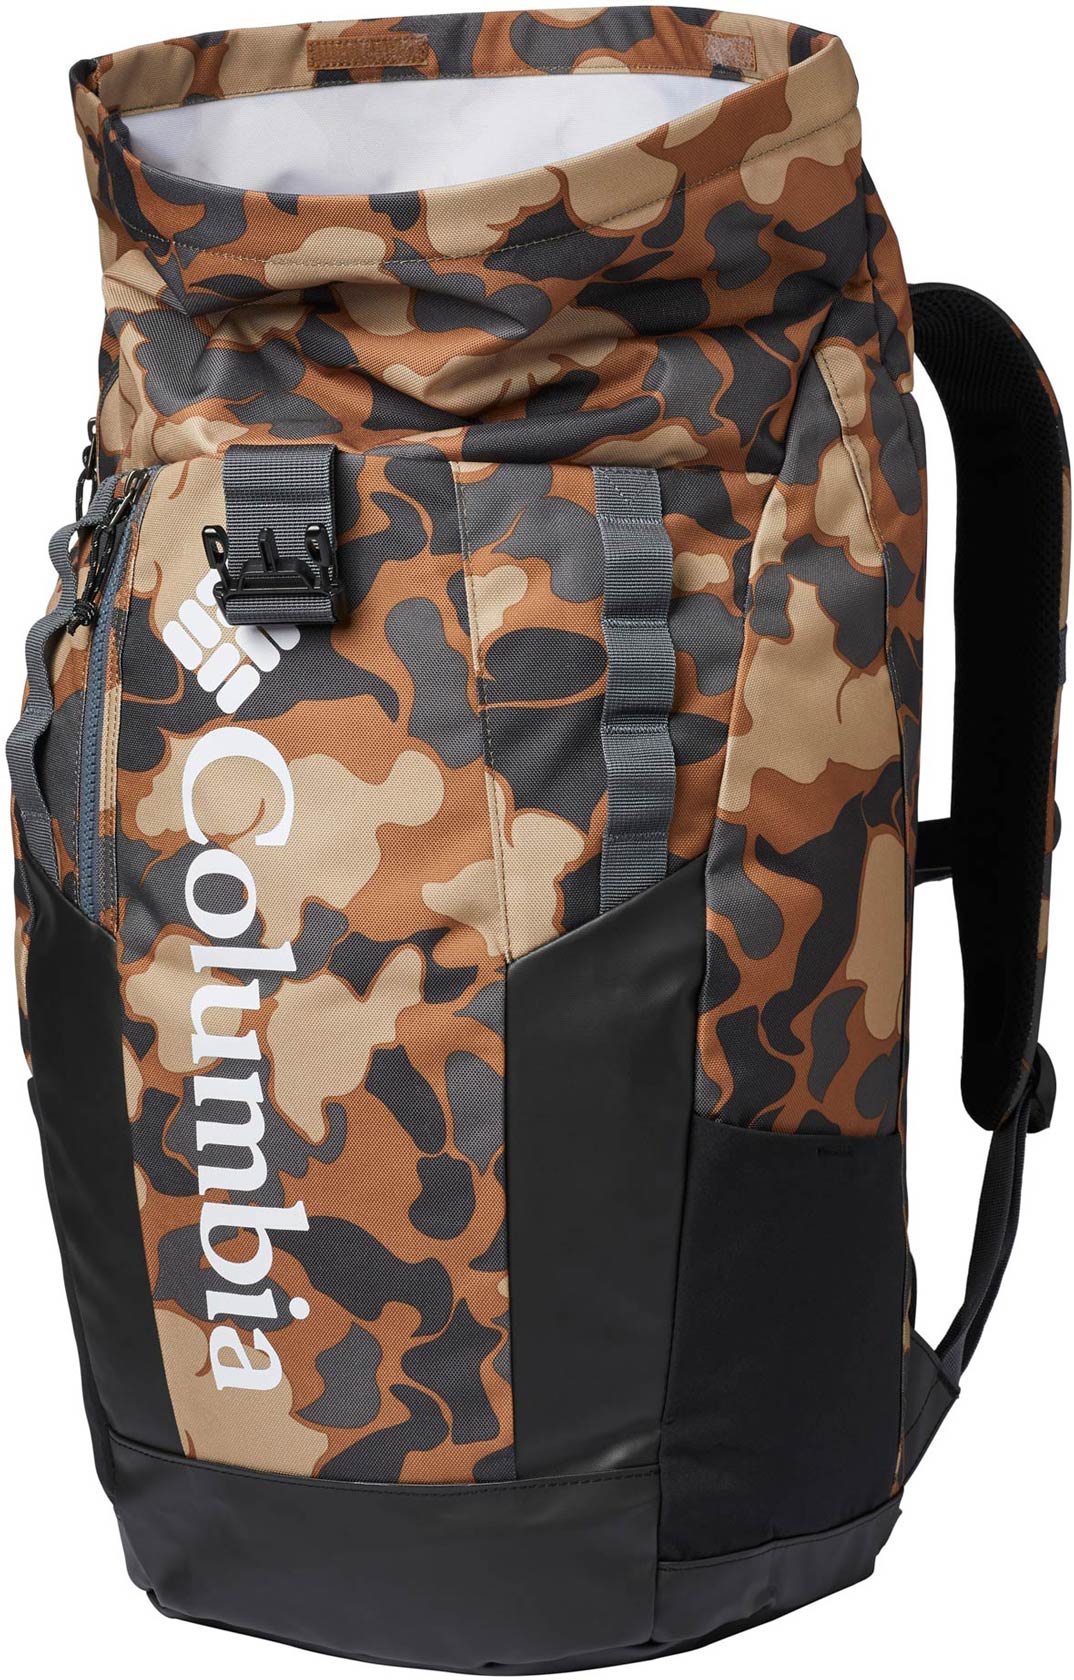 Stylish backpack